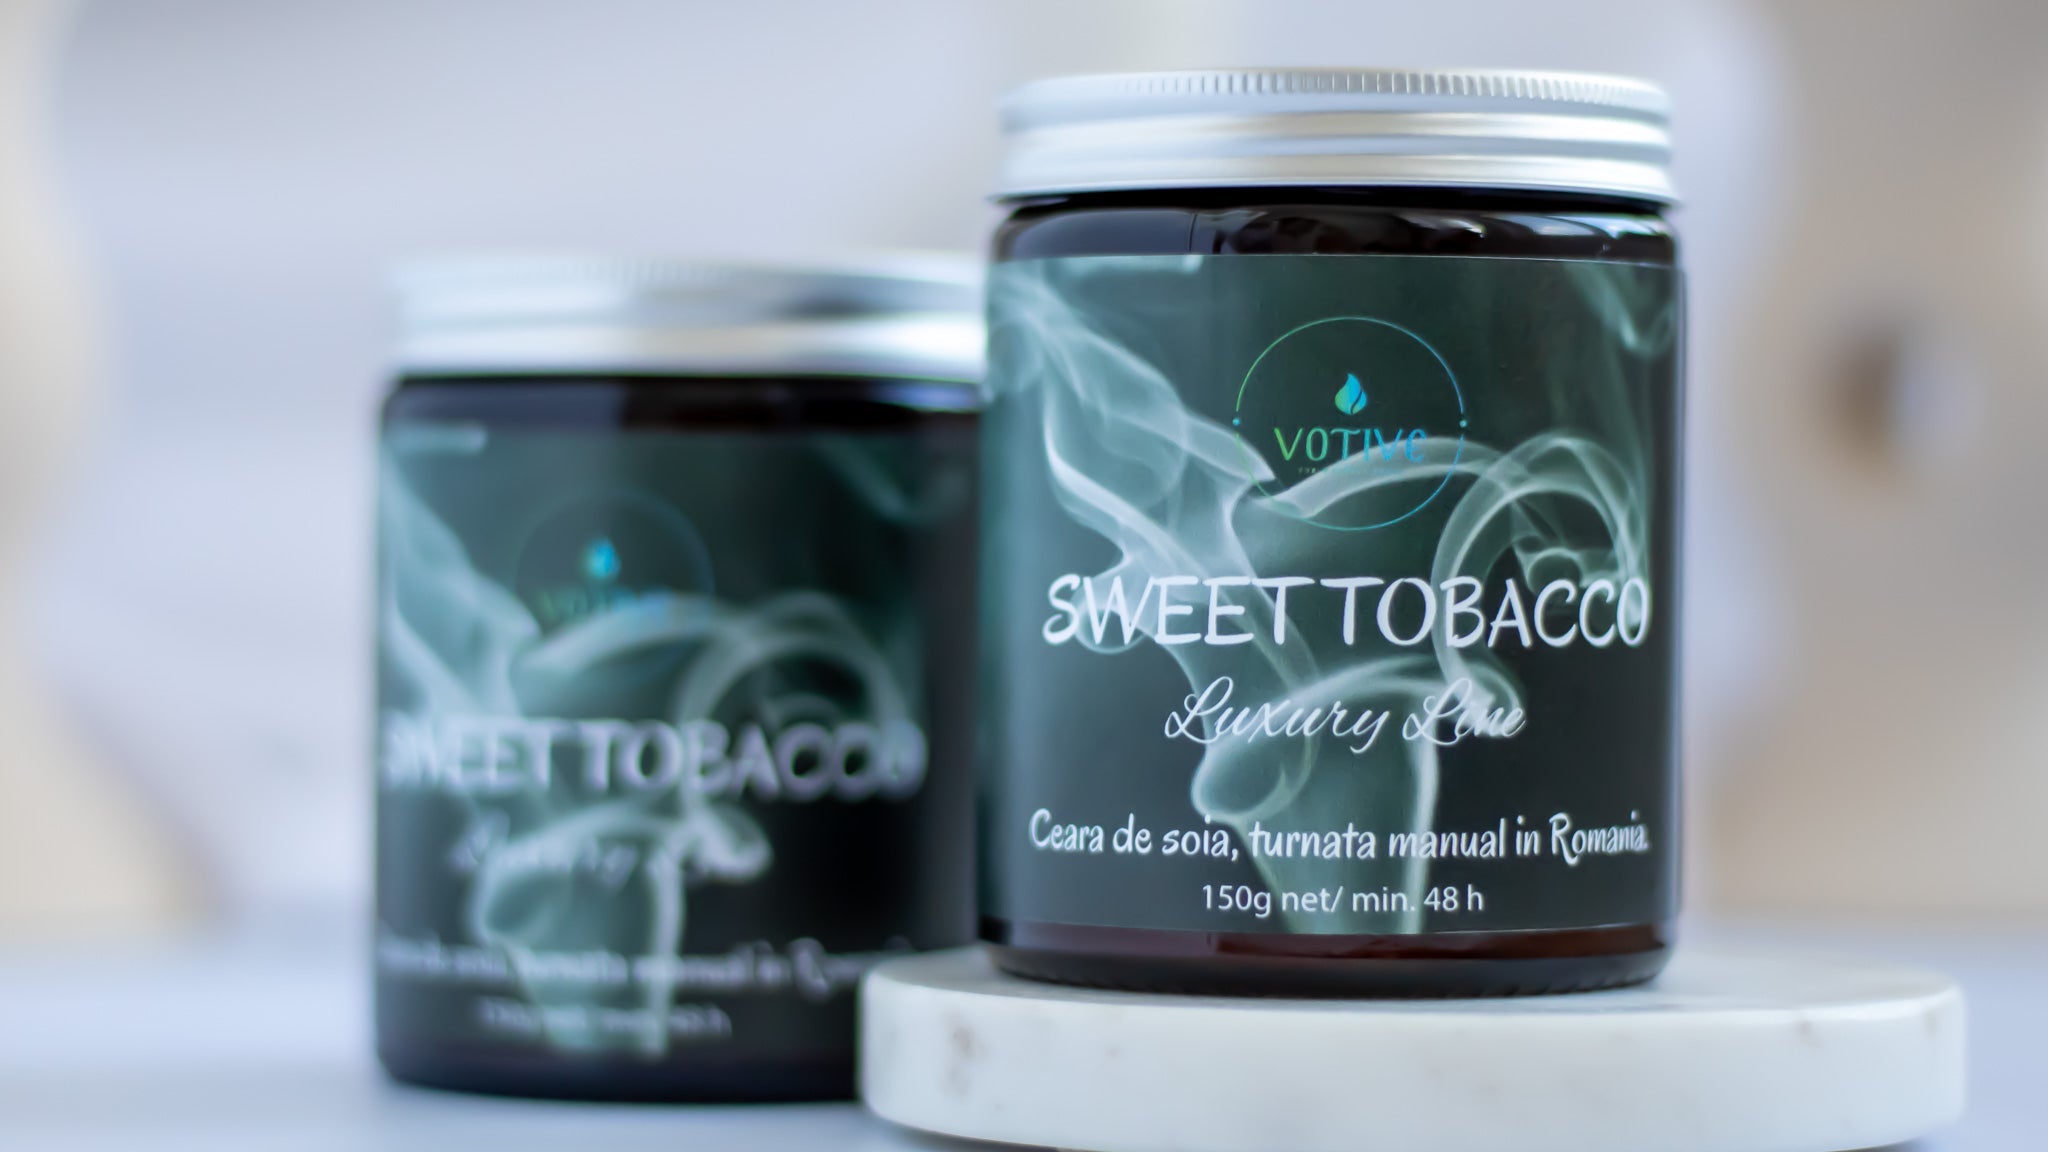 Lumânare eco-friendly Sweet Tobacco din ceară de soia cu uleiuri parfumate premium.